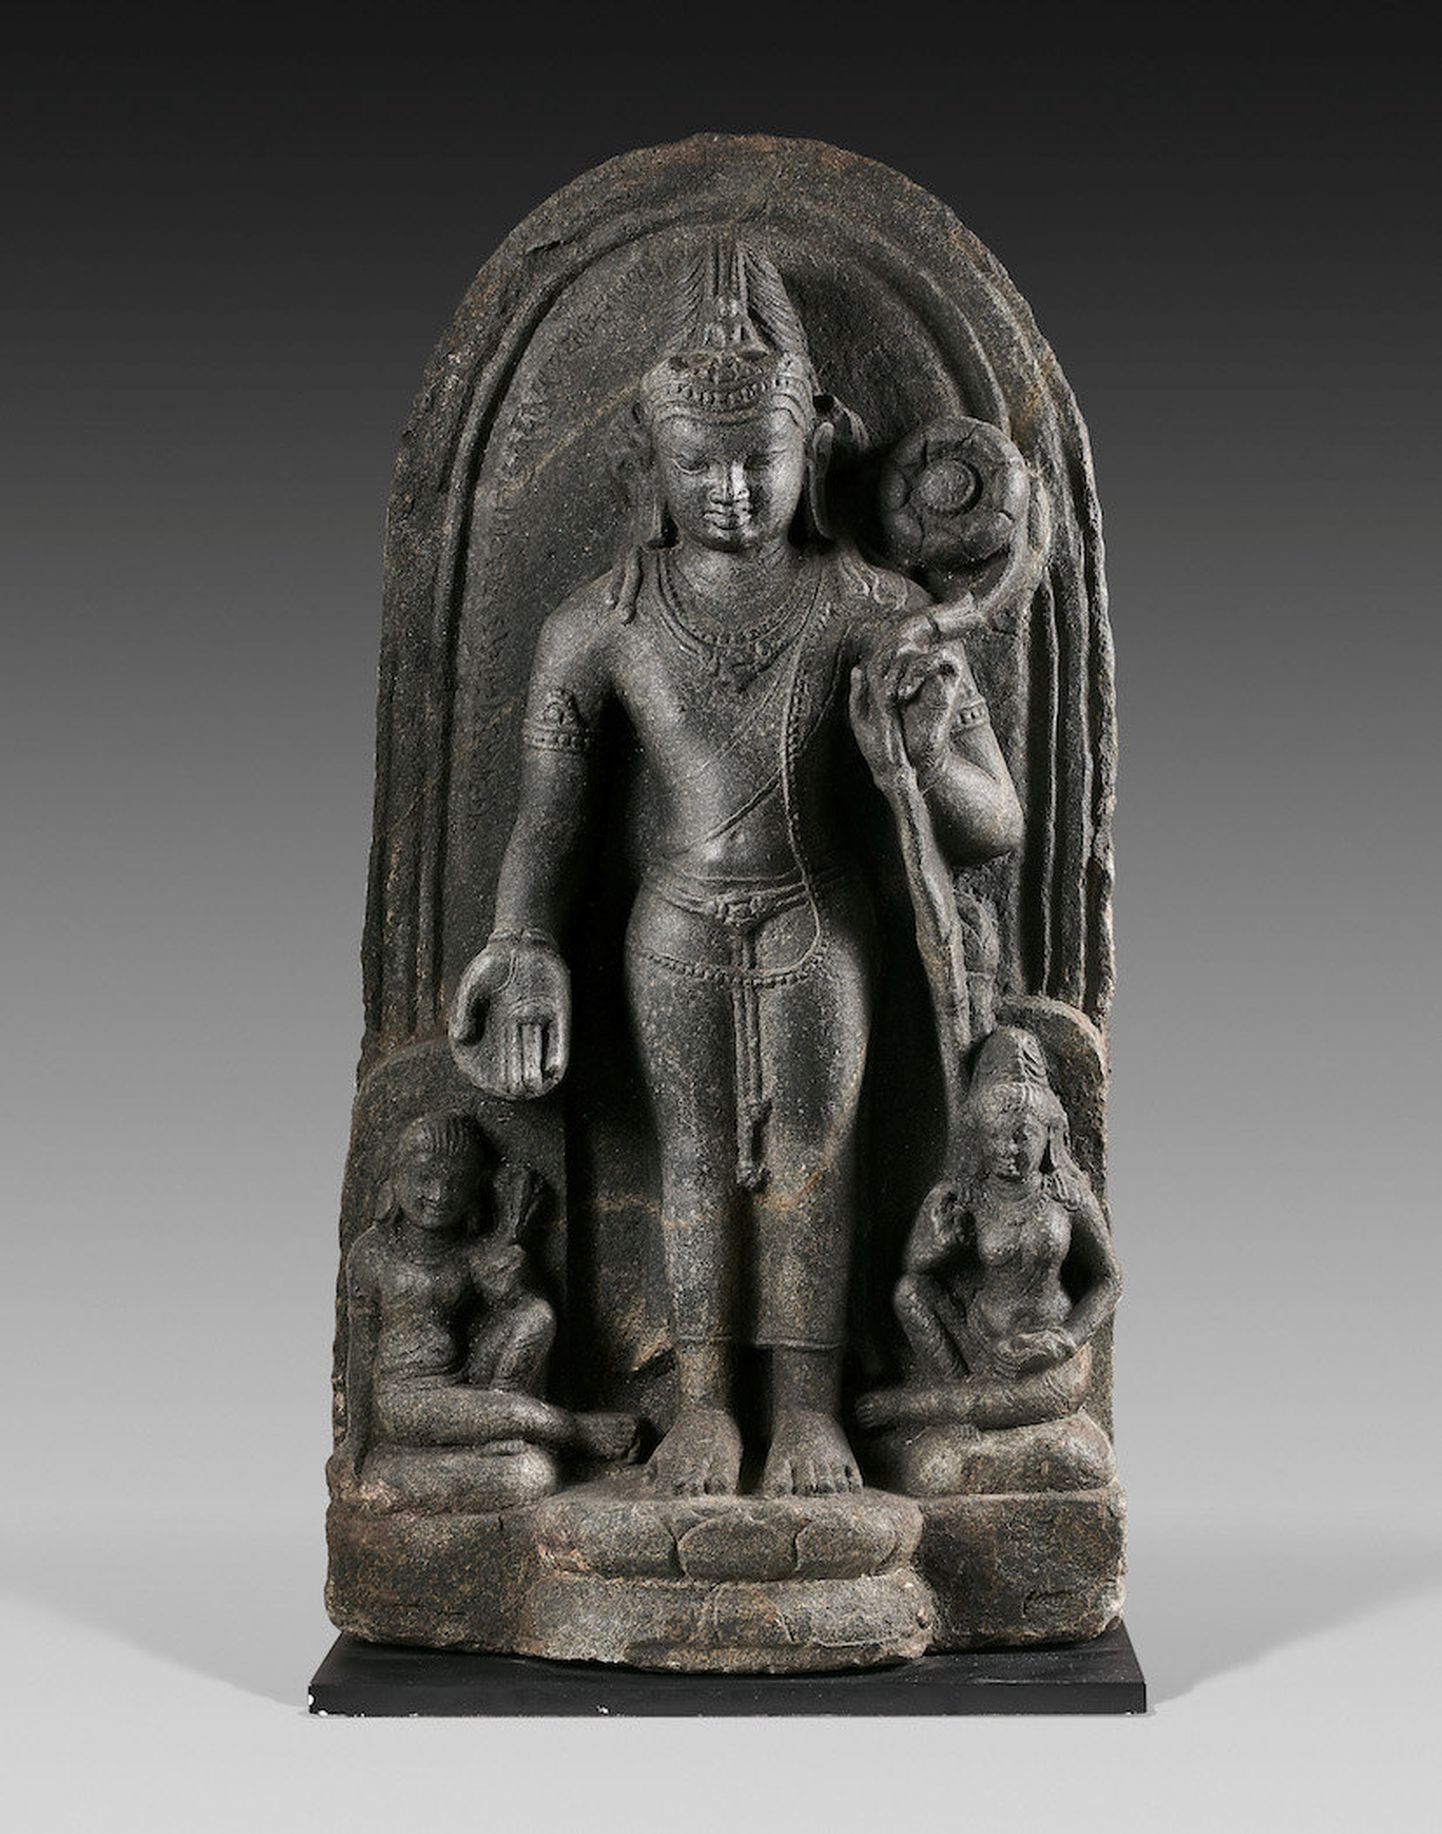 Kambodžast välja smugeldatud bodhisattvate skulptuuridega sarnase bodhisattva kuju, mis pärineb 8. või 9. sajandist, leidsid Itaaliast rahvusvahelise kunstiteoste tagasisaamise ühenduse Art Recovery International eksperdid, olles otsinud seda aastakümneid. Pildil olev Buddha kuju oli röövitud ühest pühamust ja see anti tagasi Indiale